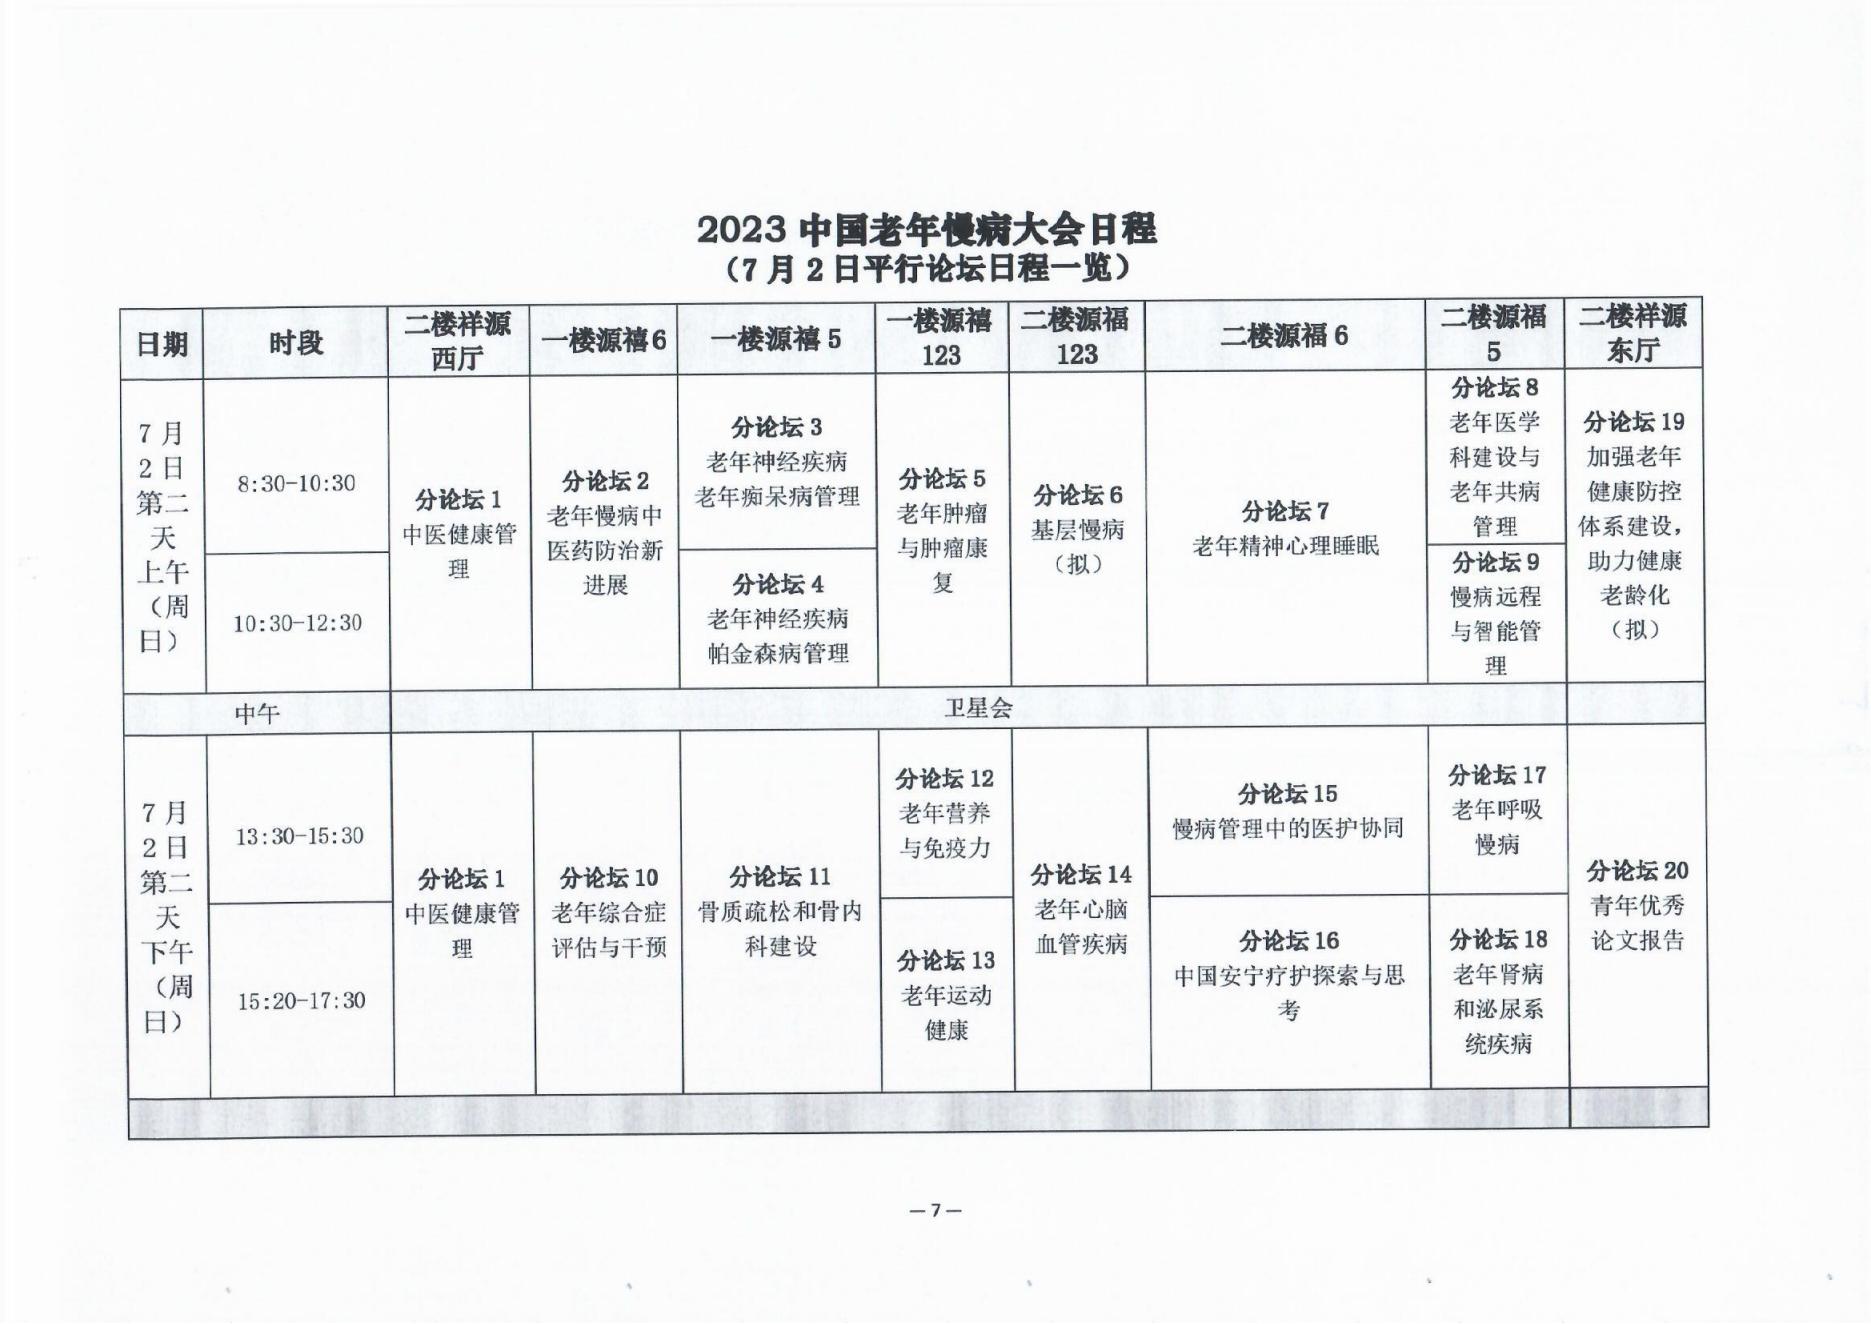 2023中国老年慢病大会会议通知（第二轮）0606(1)_06.jpg